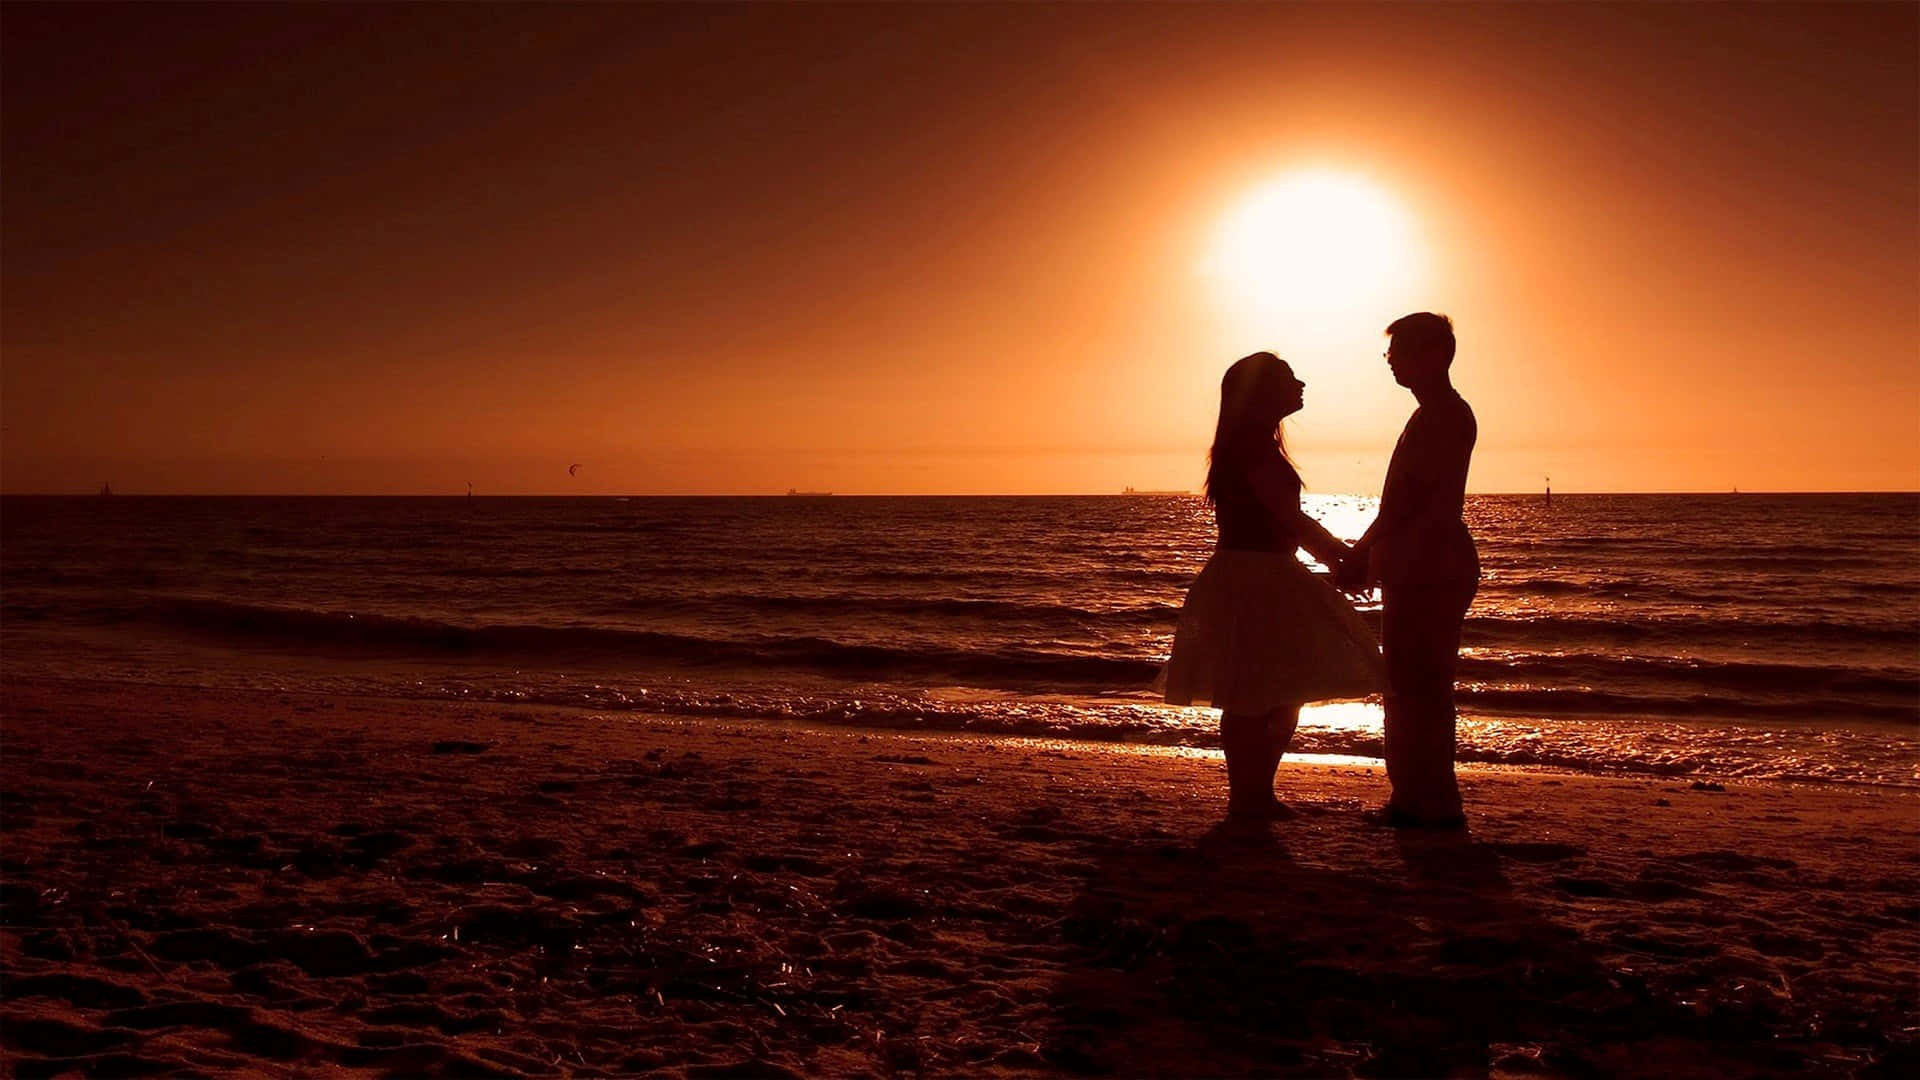 Couple Enjoying a Serene Sunset at the Beach Wallpaper